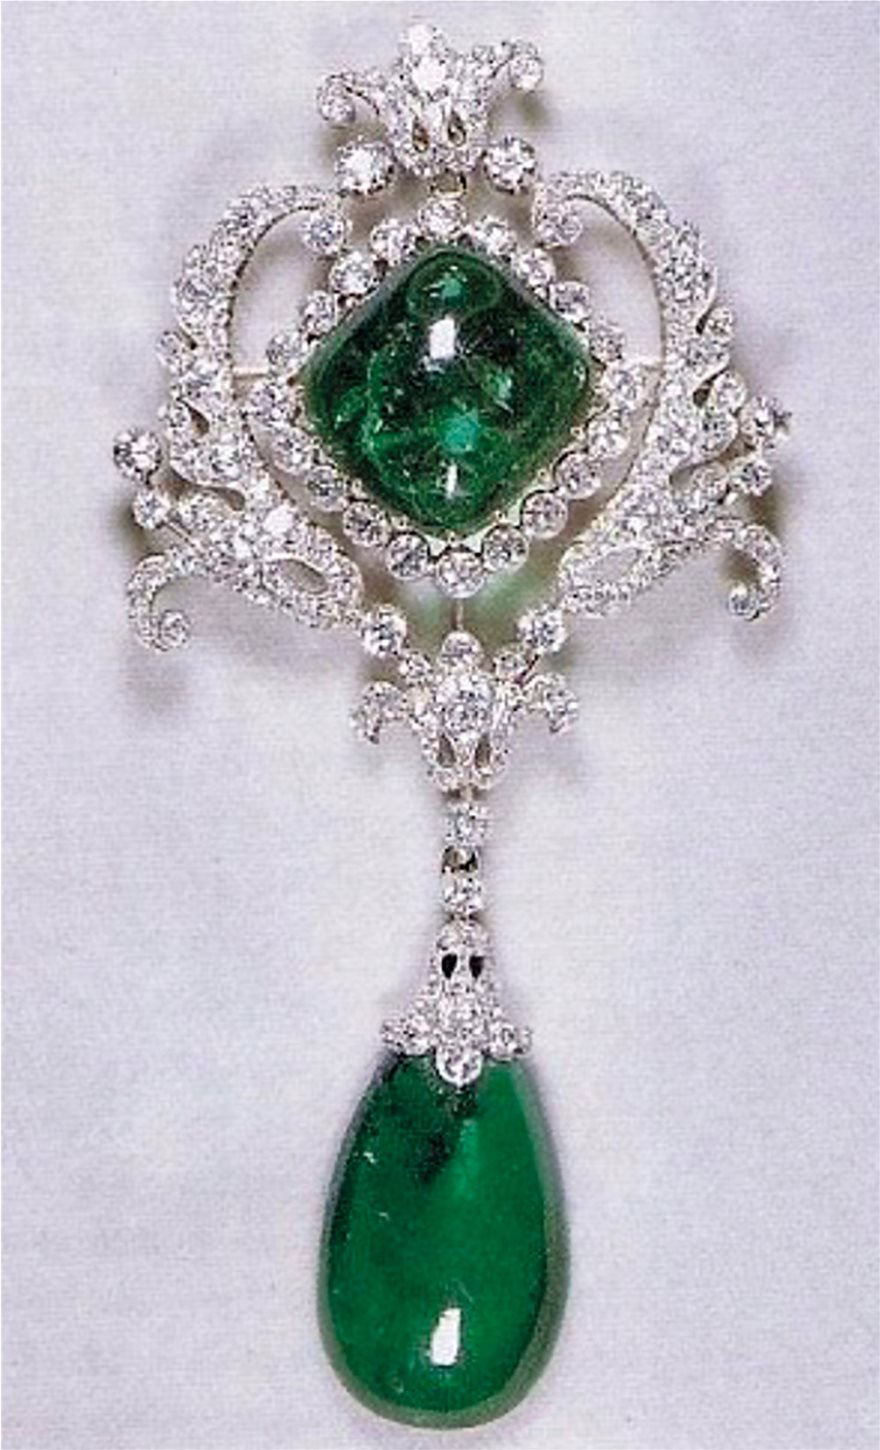 Βασιλικά κοσμήματα αμύθητης αξίας: Τα Διαμάντια του Στέμματος - Φωτογραφία 28